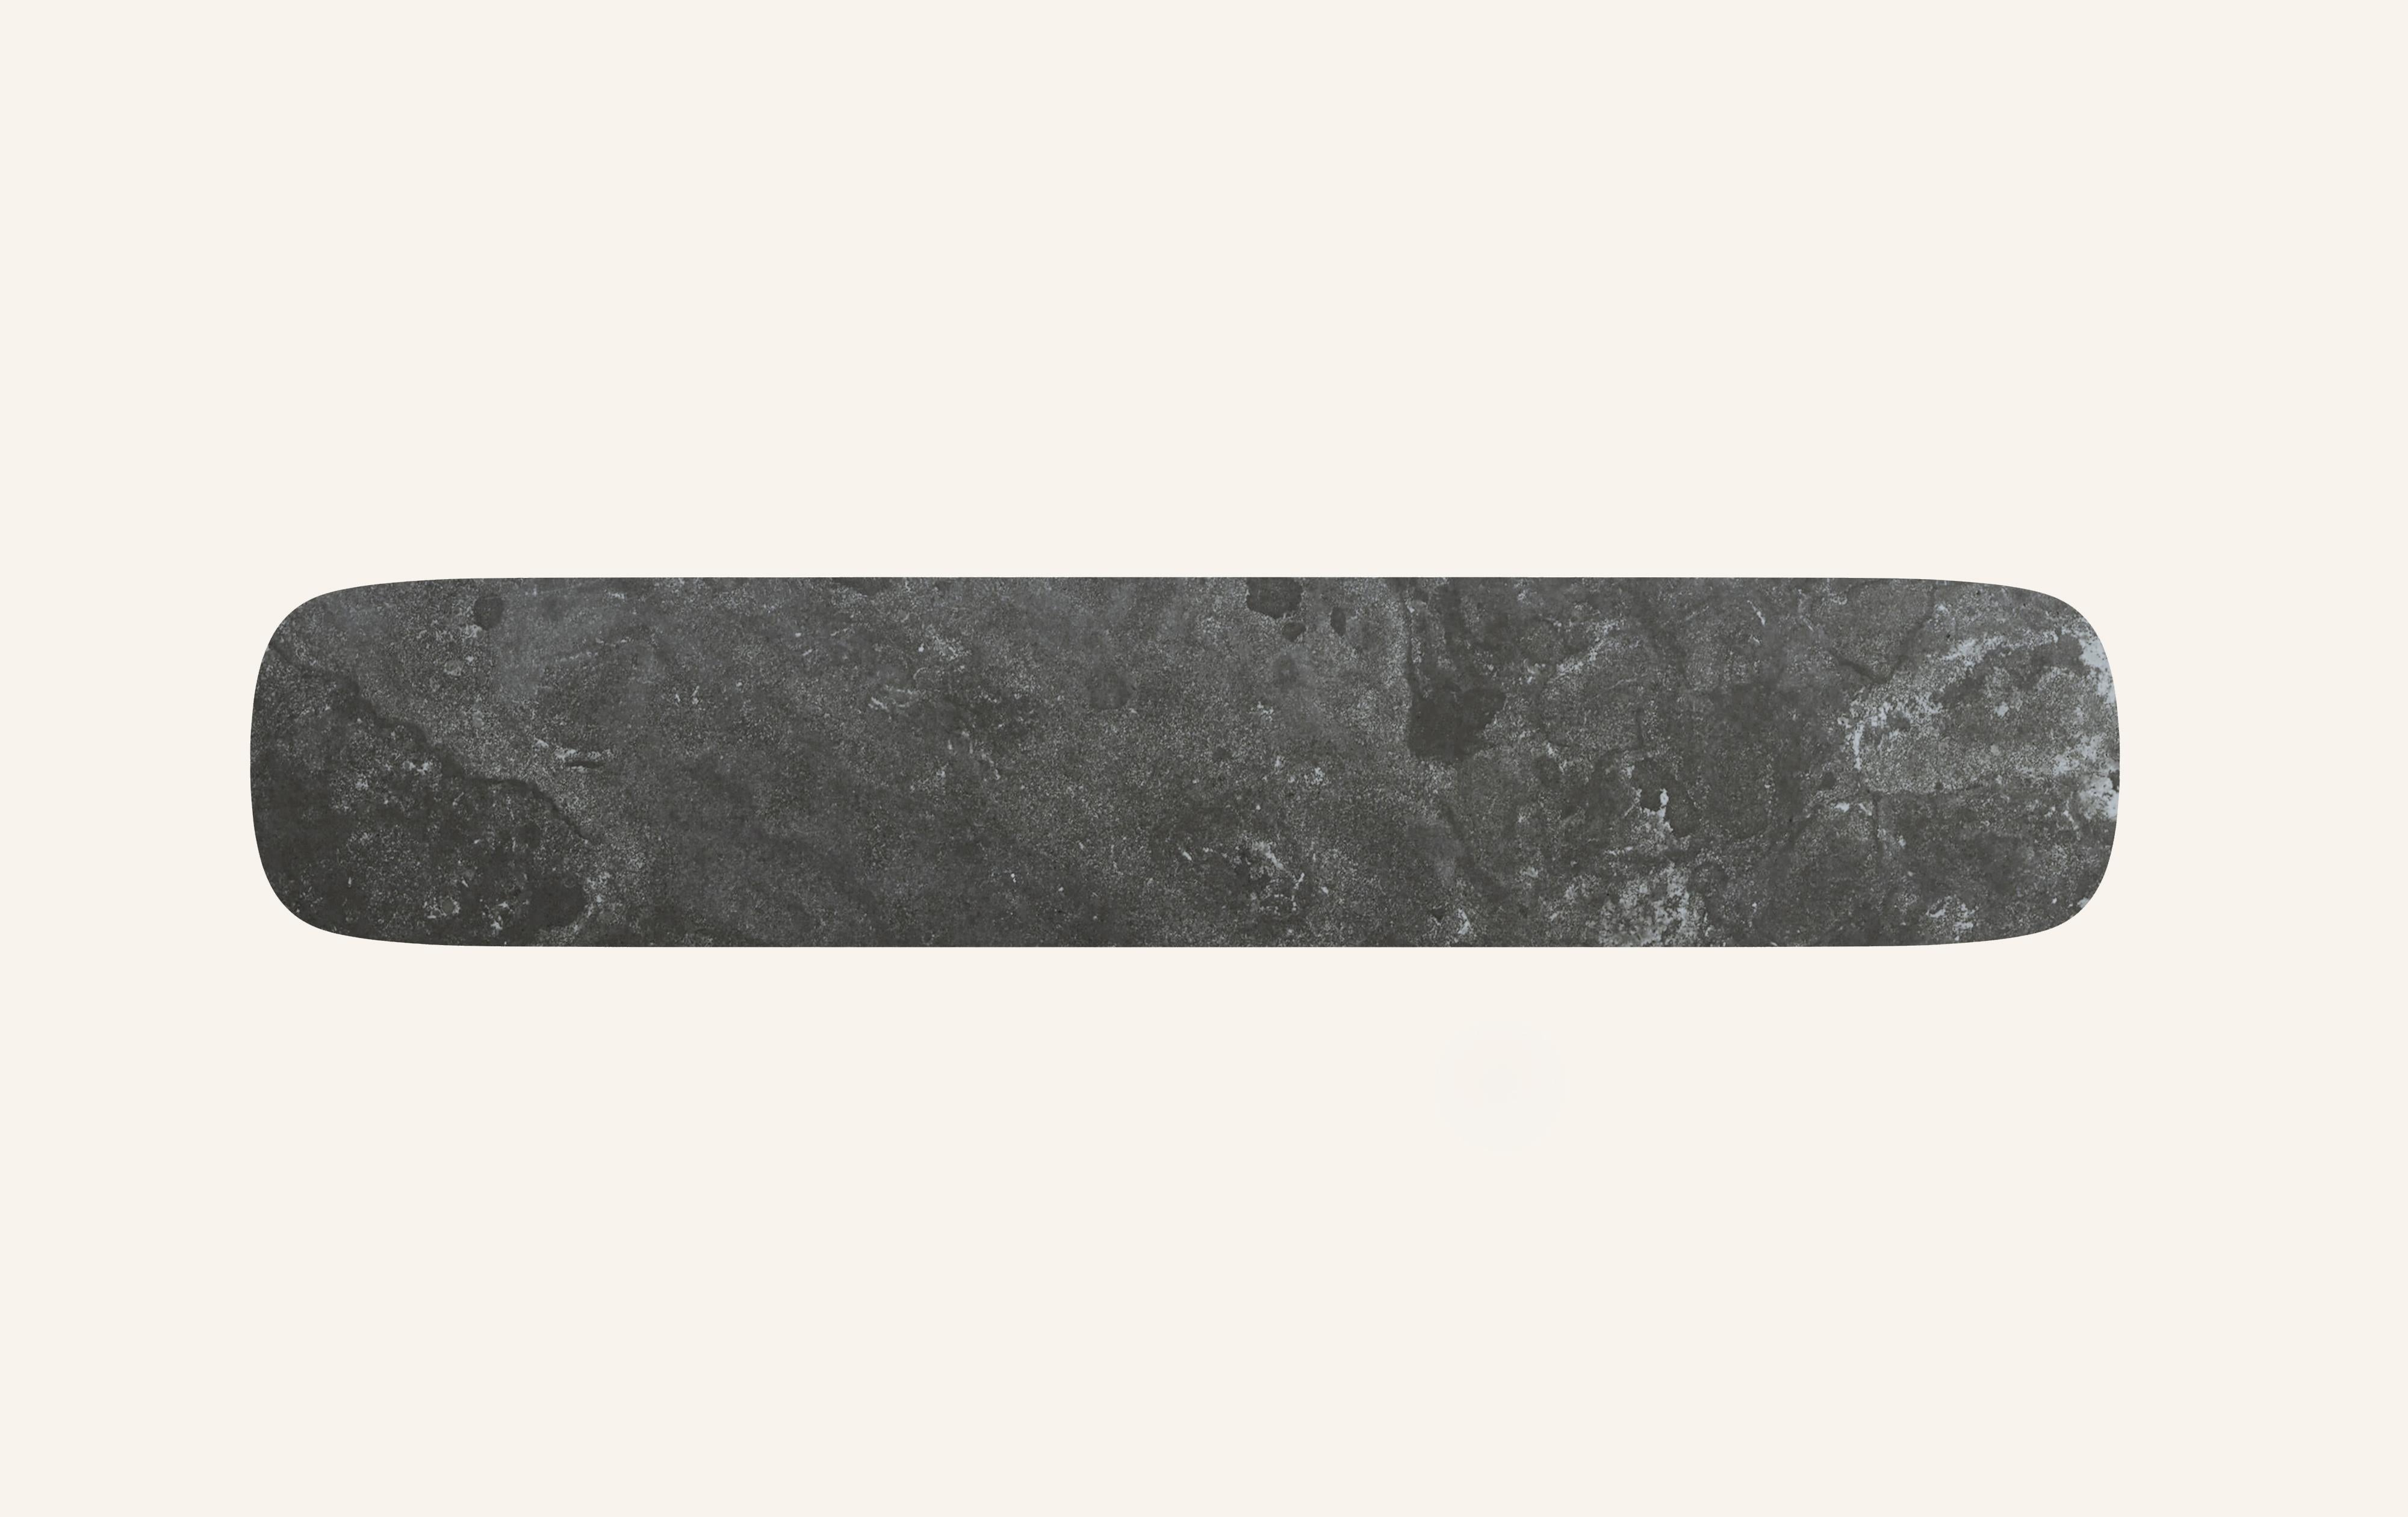 FORM(LA) Cono Console Table 72”L x 15”W x 33”H Nero Petite Granite In New Condition For Sale In Los Angeles, CA